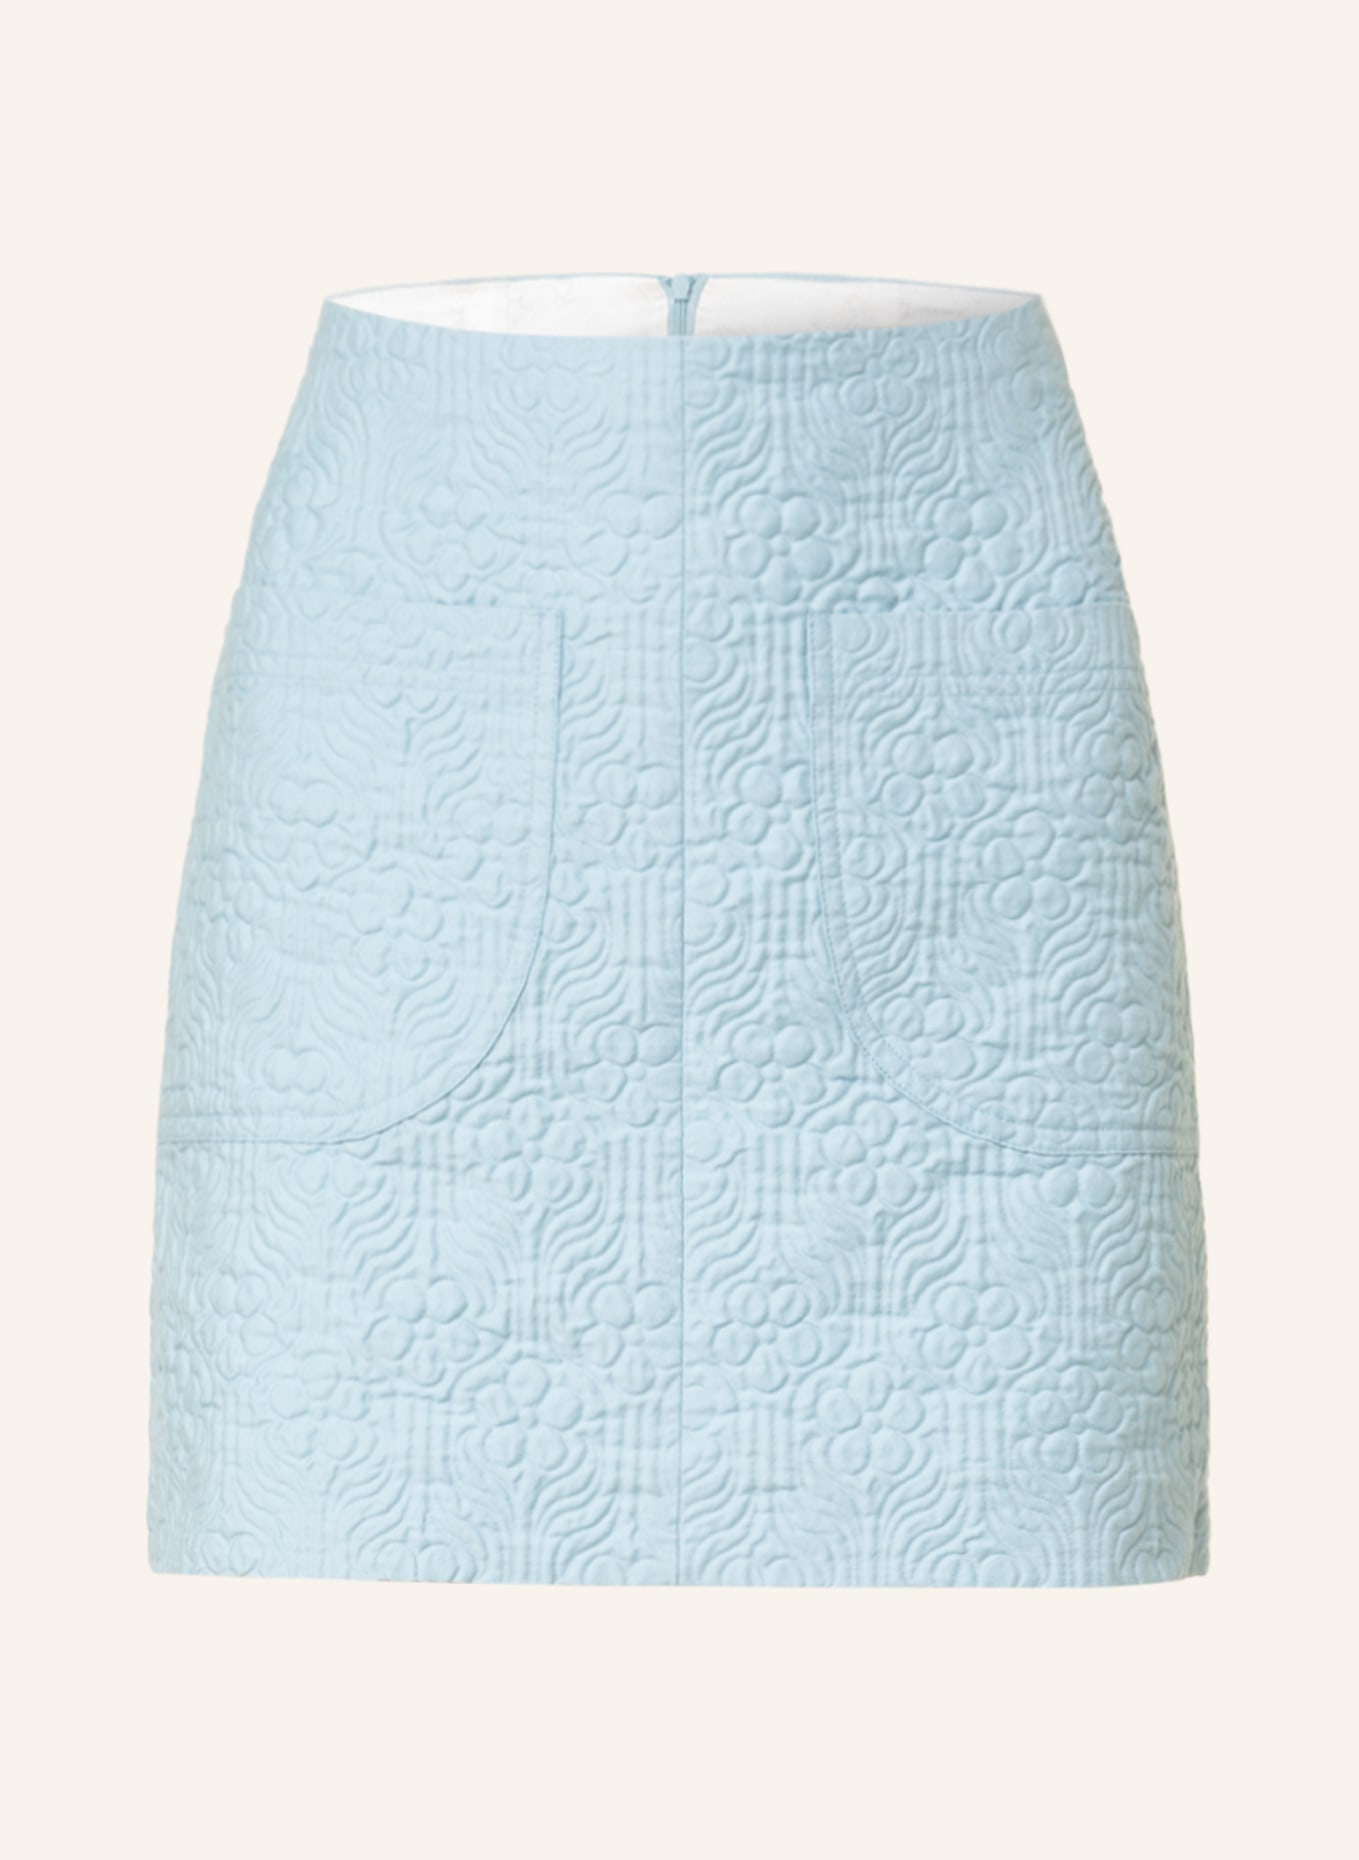 RÓHE Jacquard skirt, Color: LIGHT BLUE (Image 1)